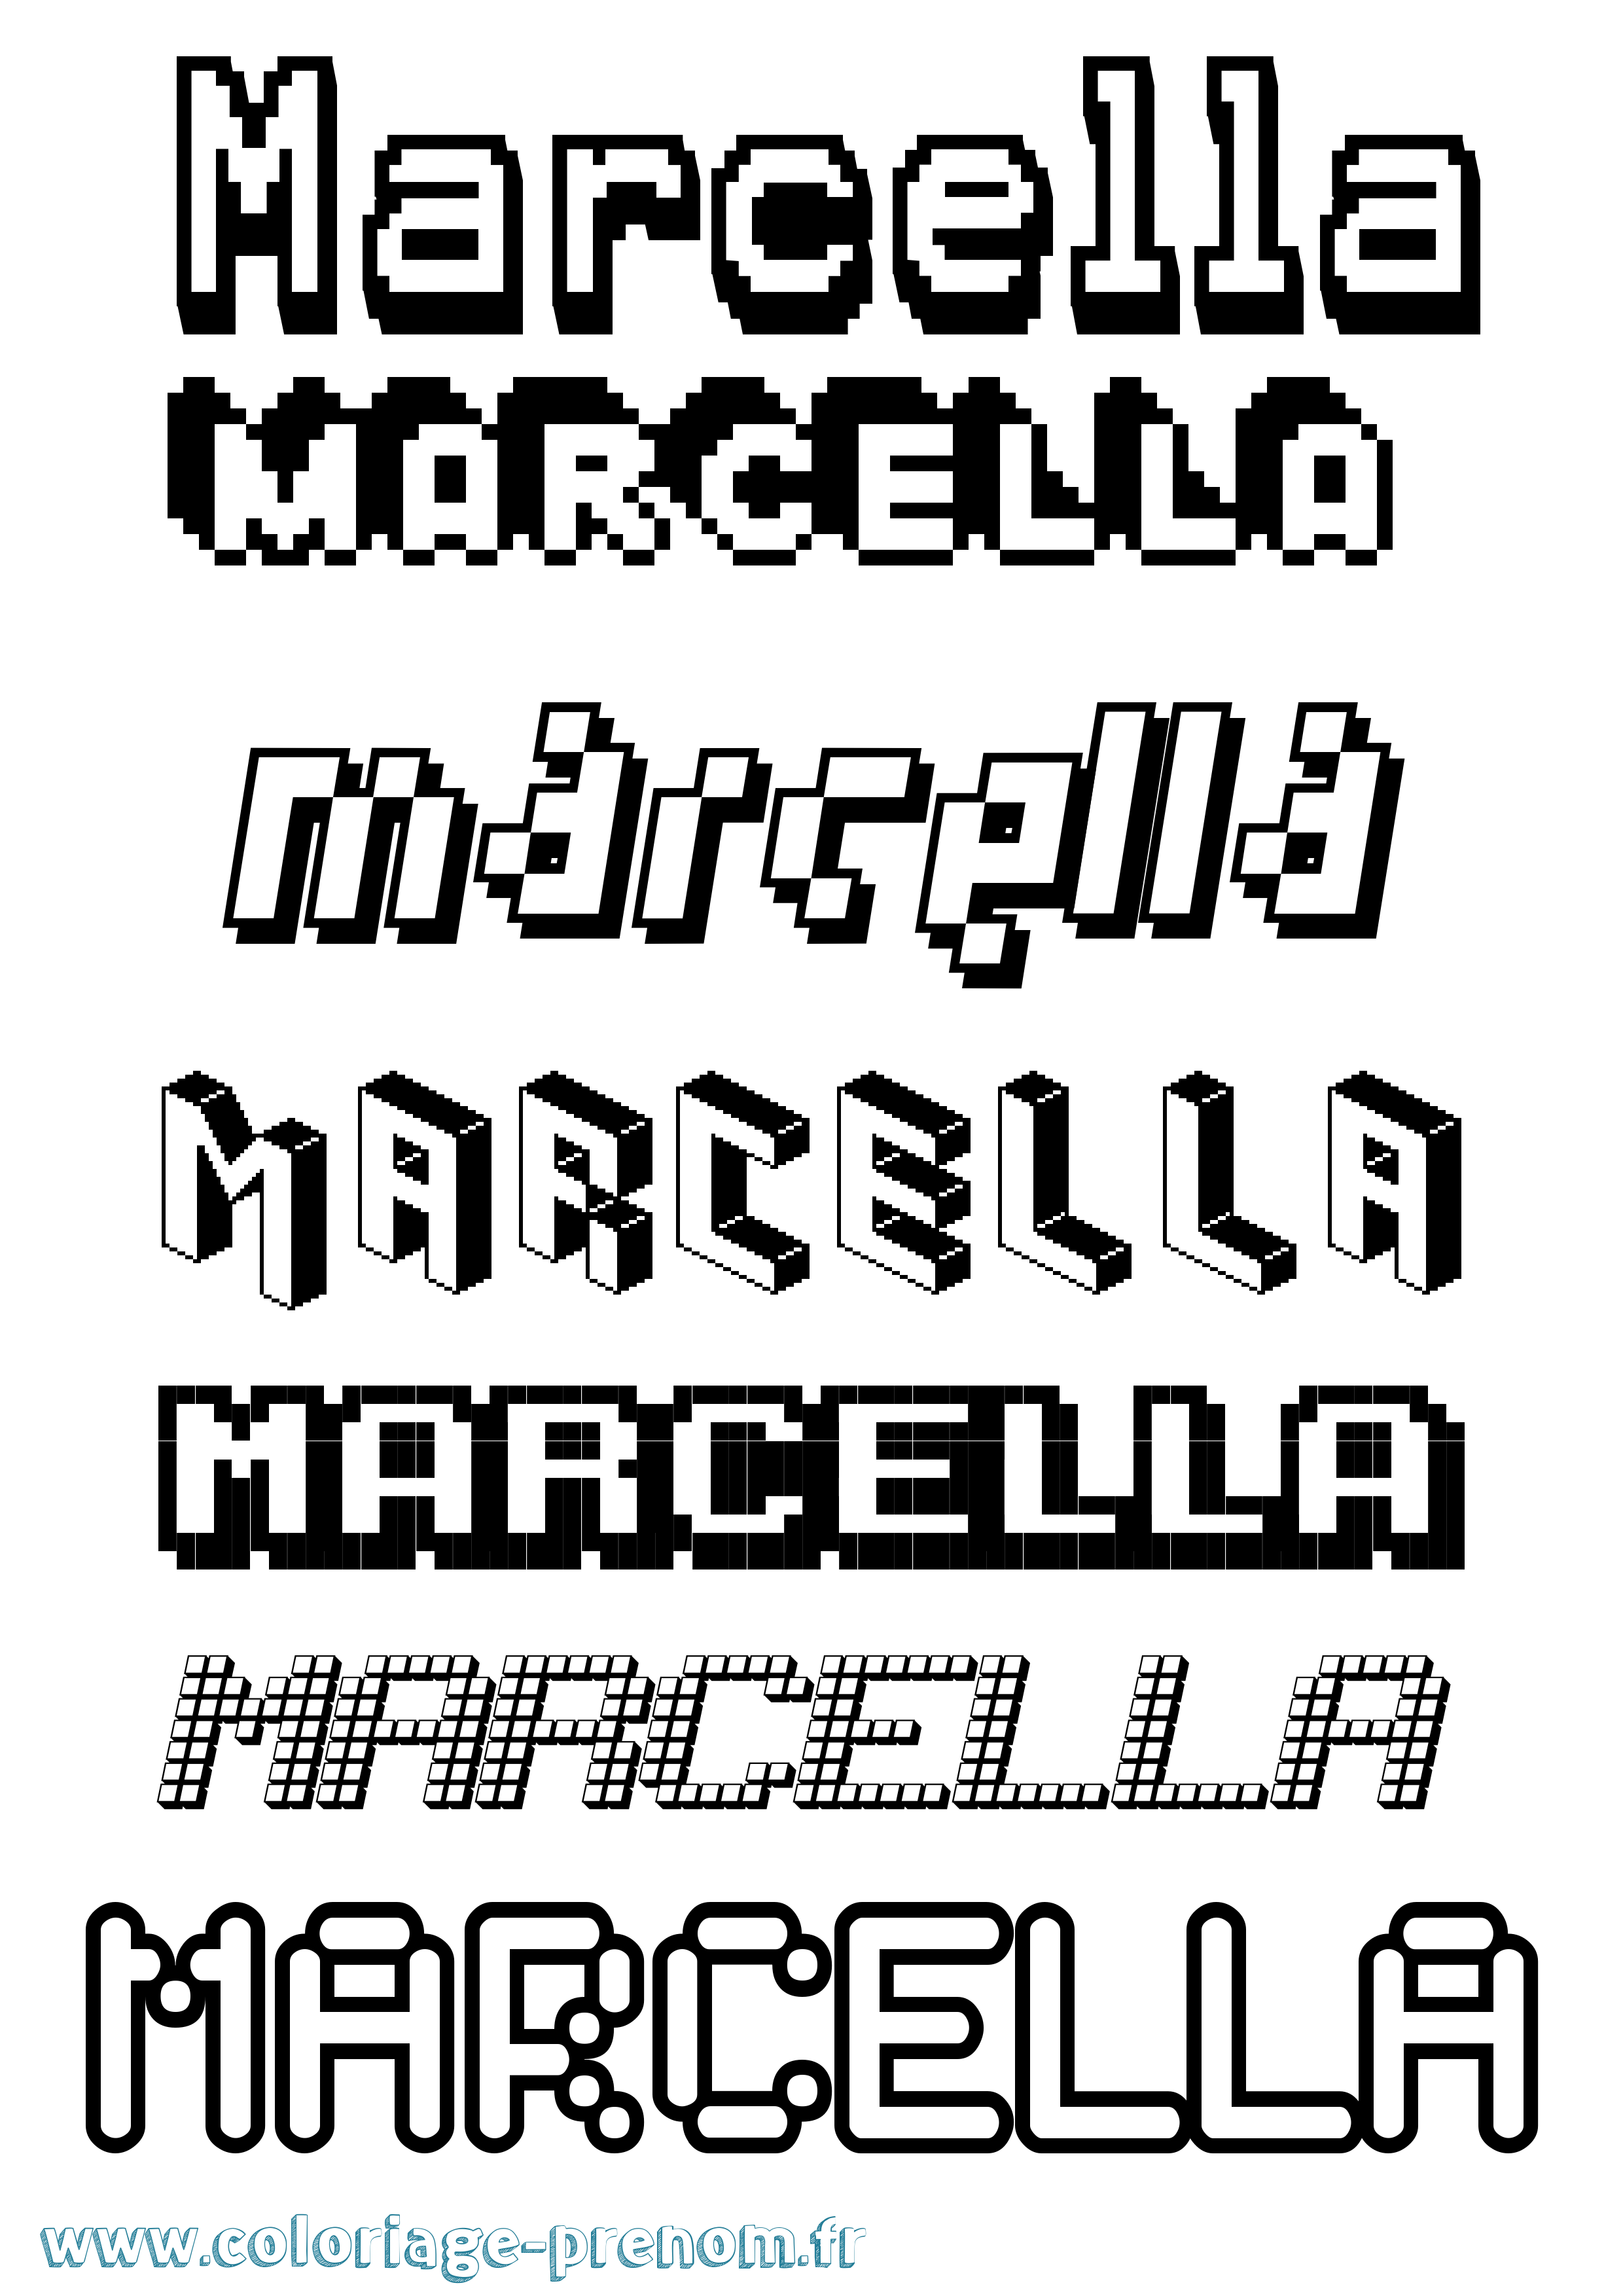 Coloriage prénom Marcella Pixel